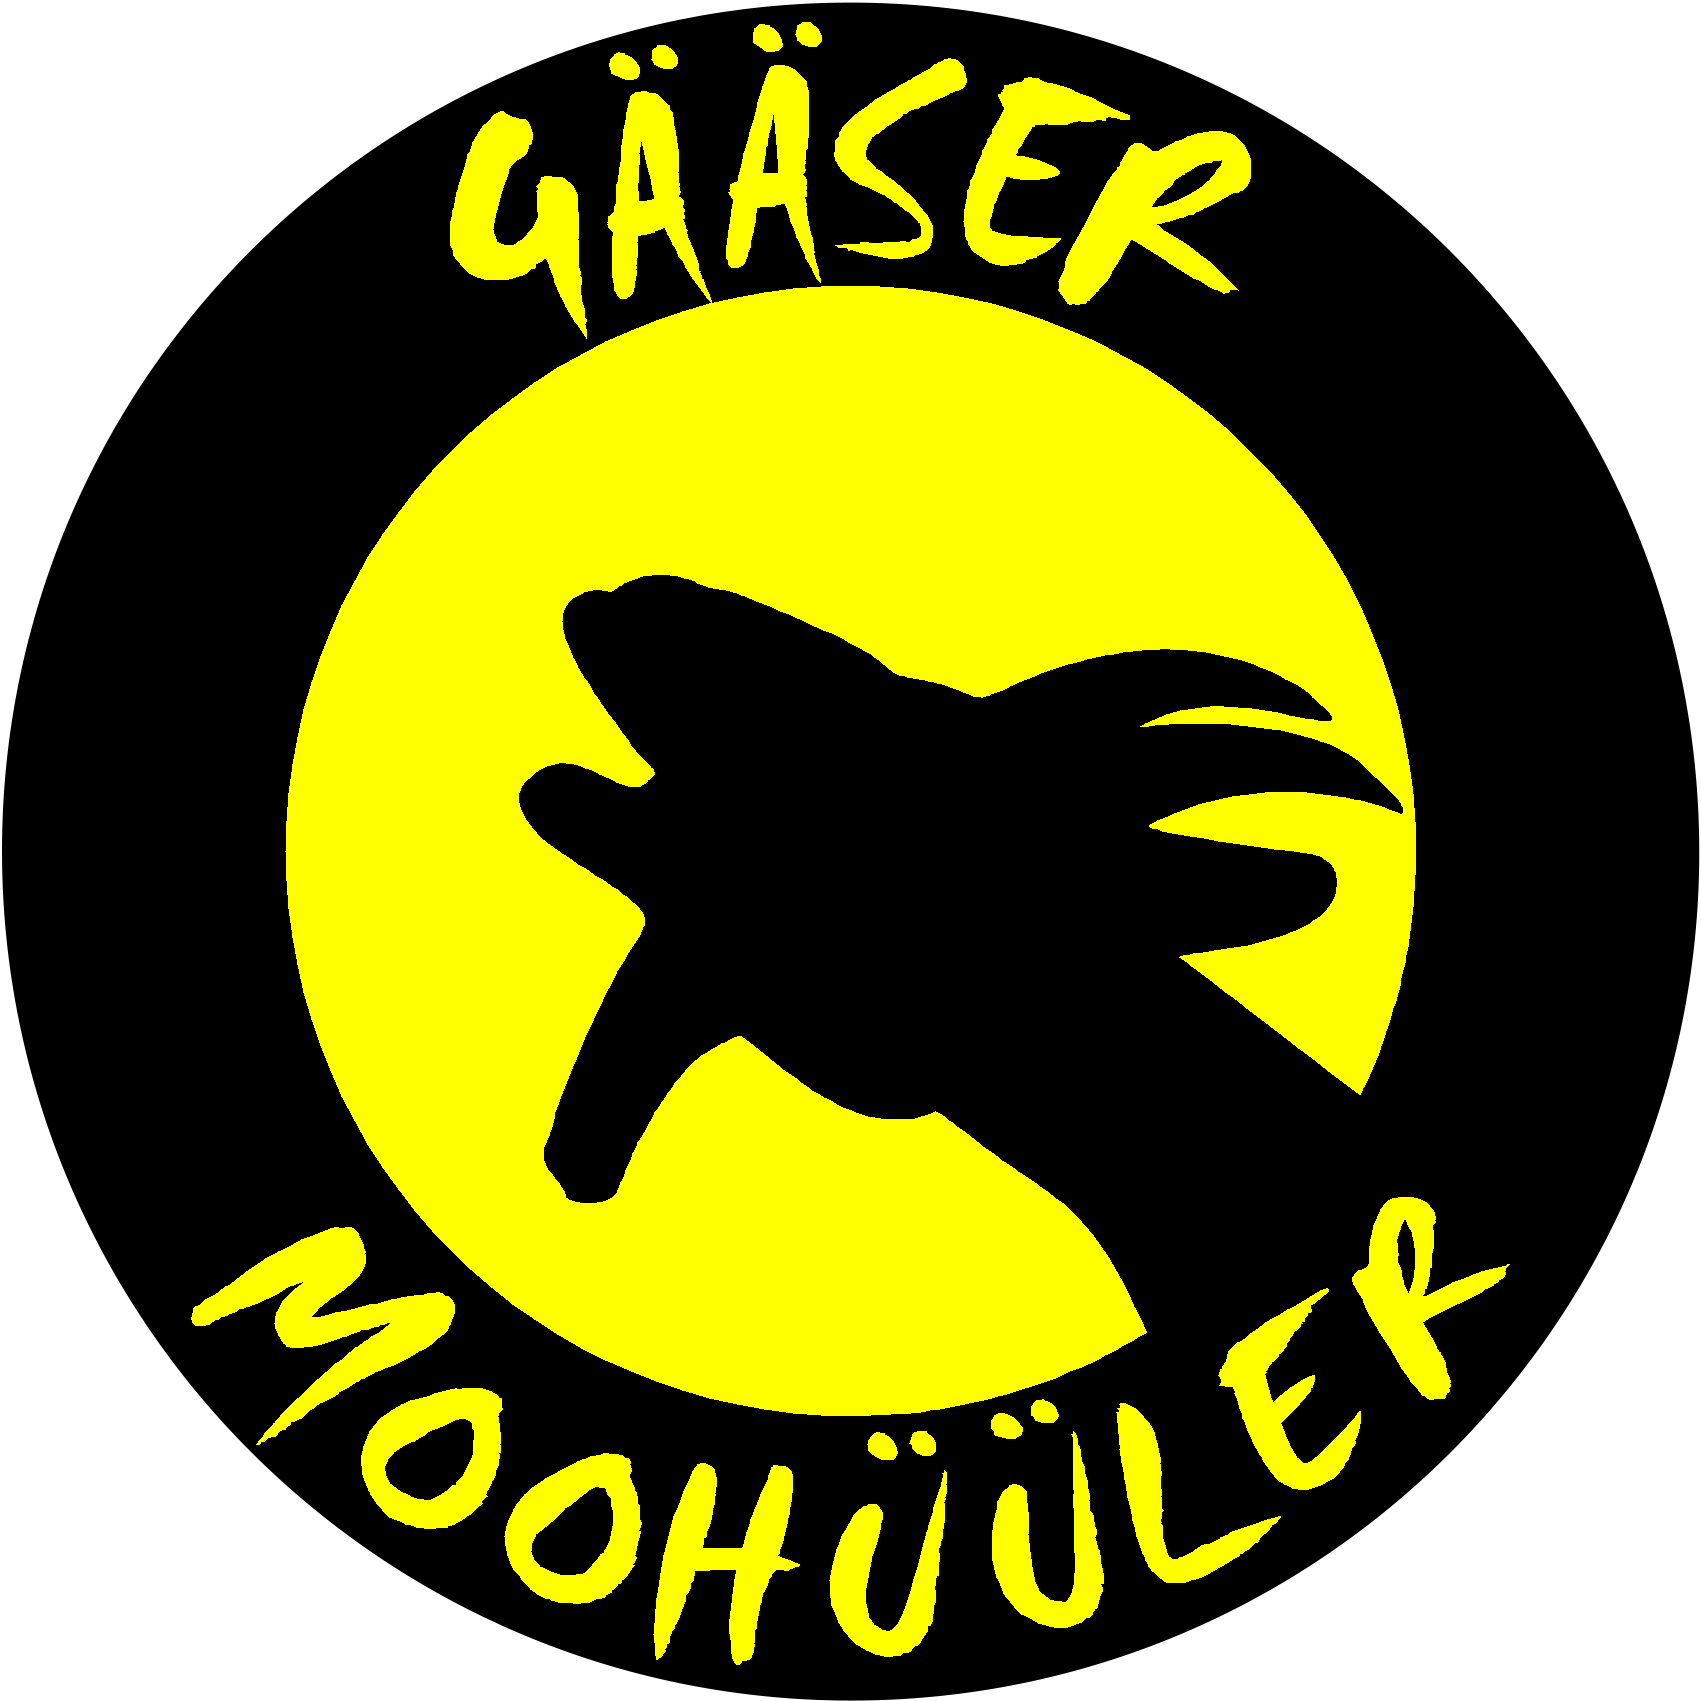 Logo der Guggenmusigg Gääser Moohüller aus Gais.